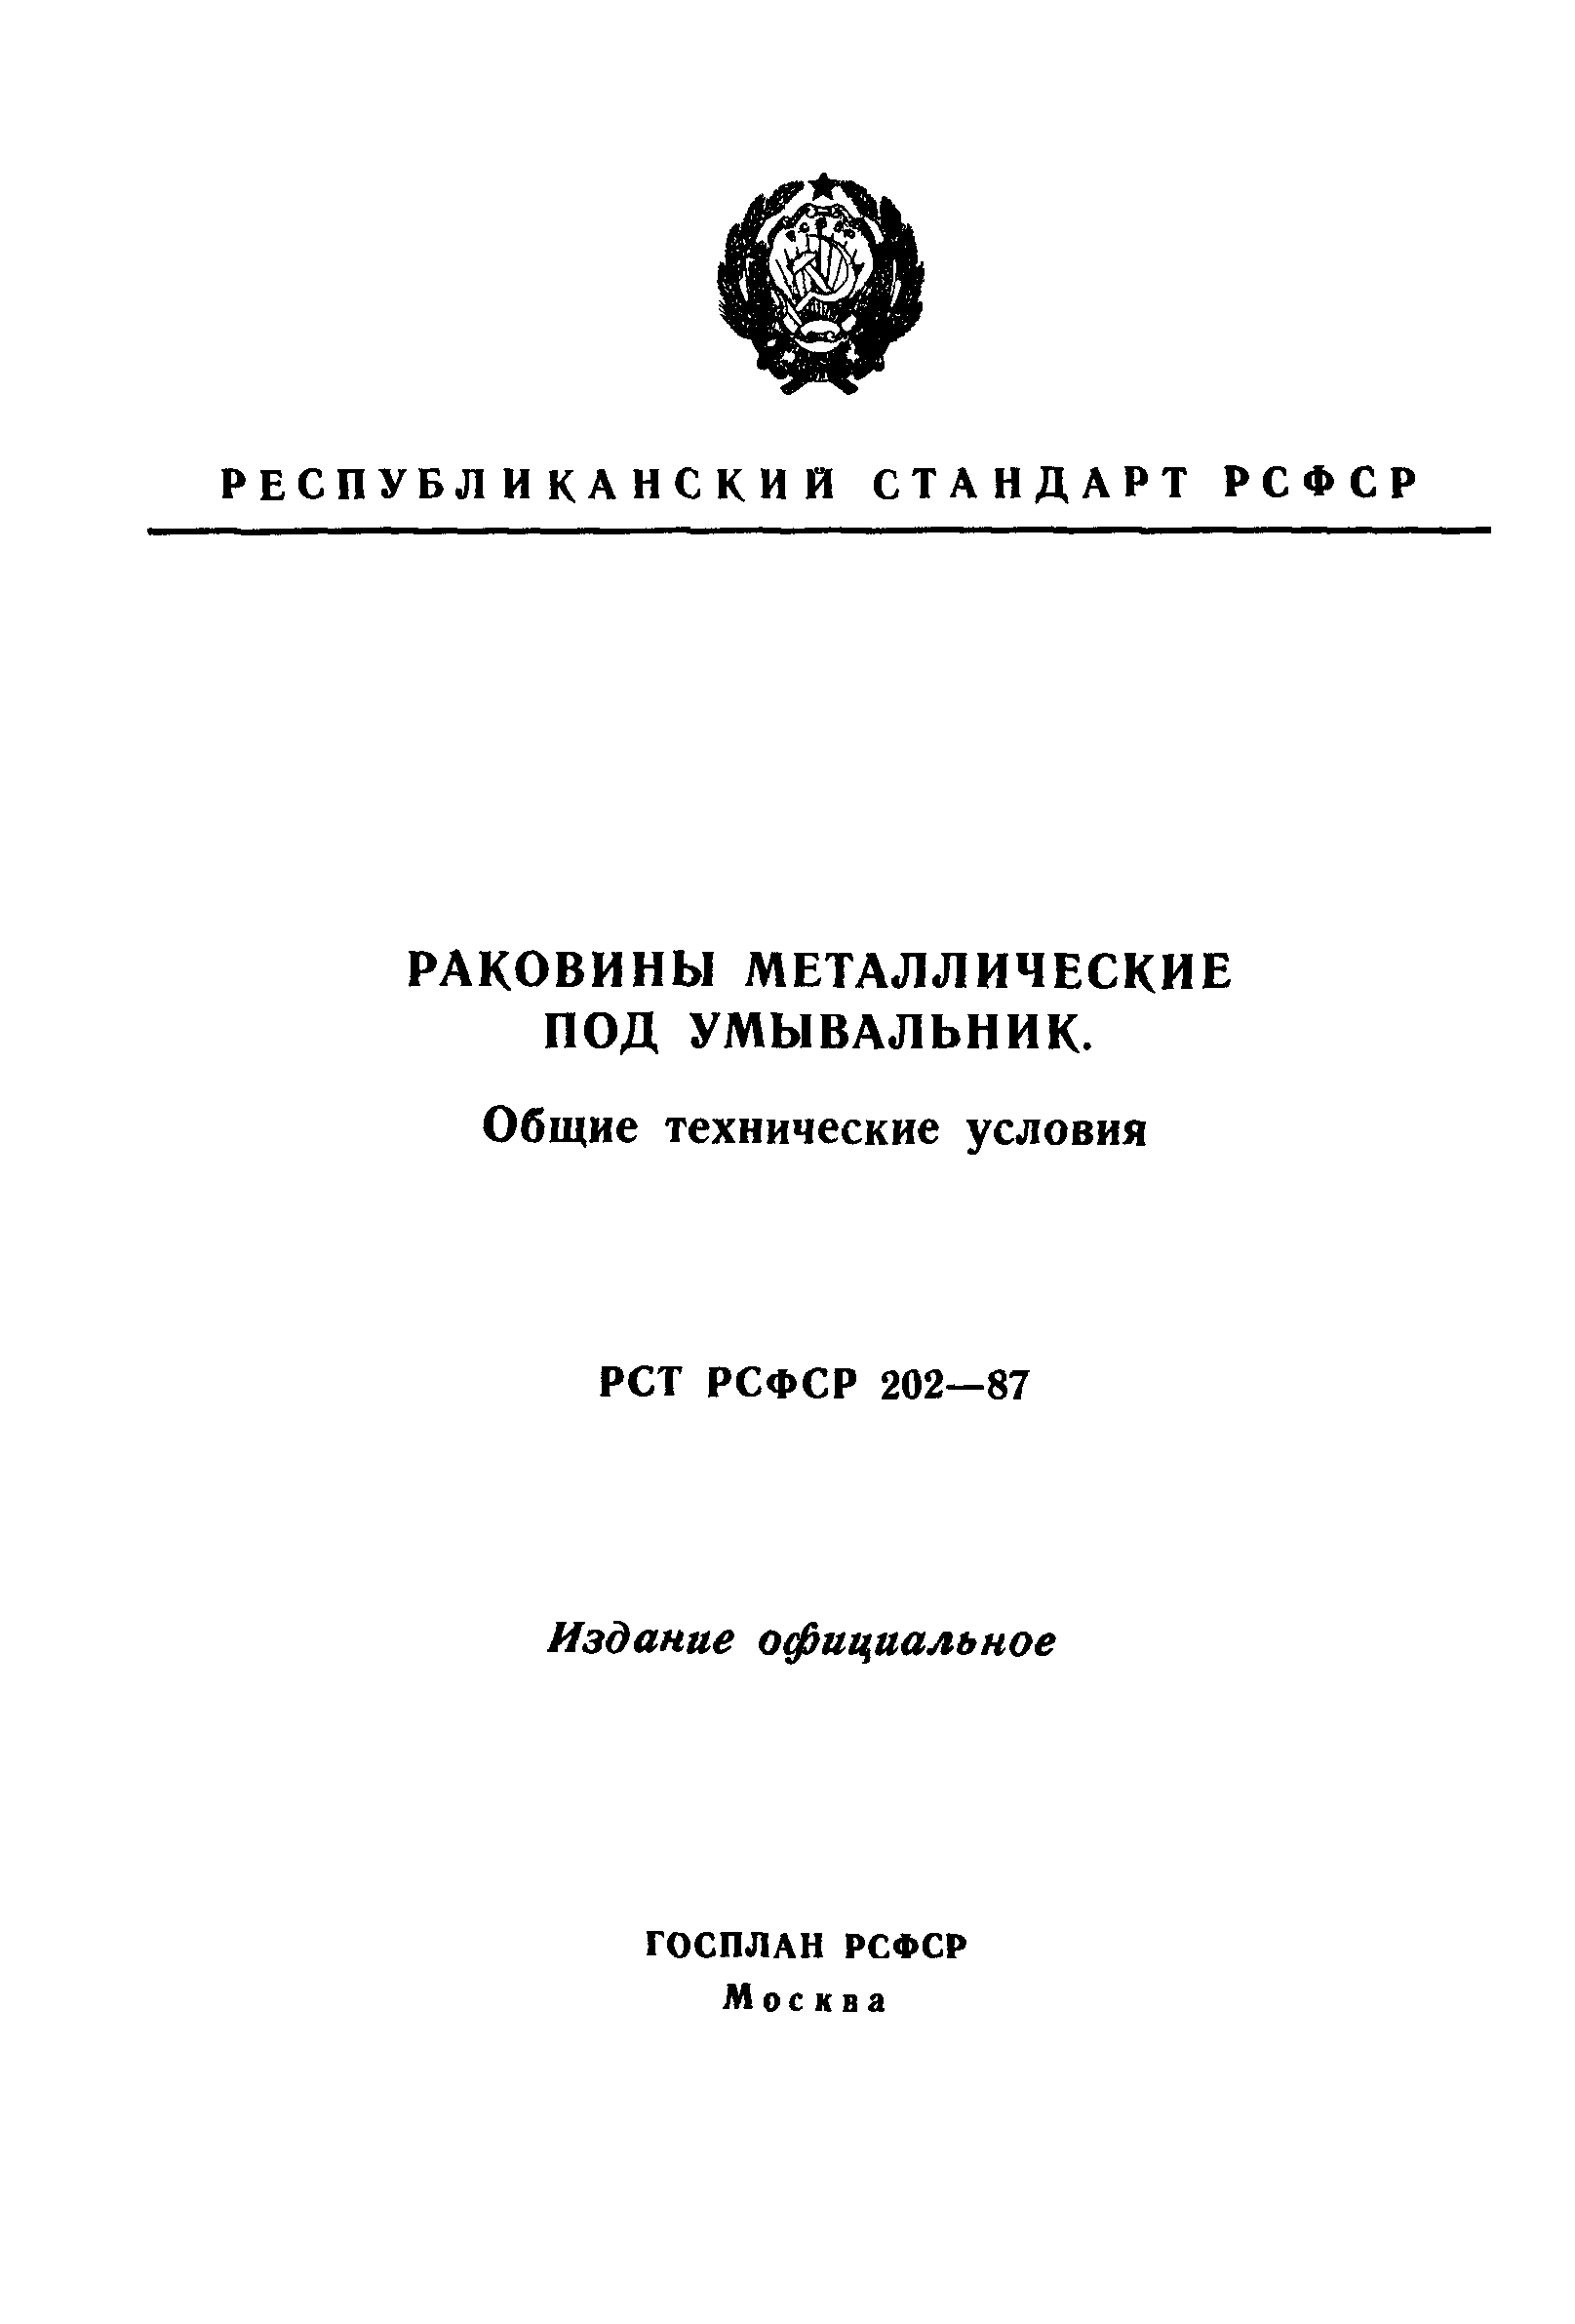 РСТ РСФСР 202-87